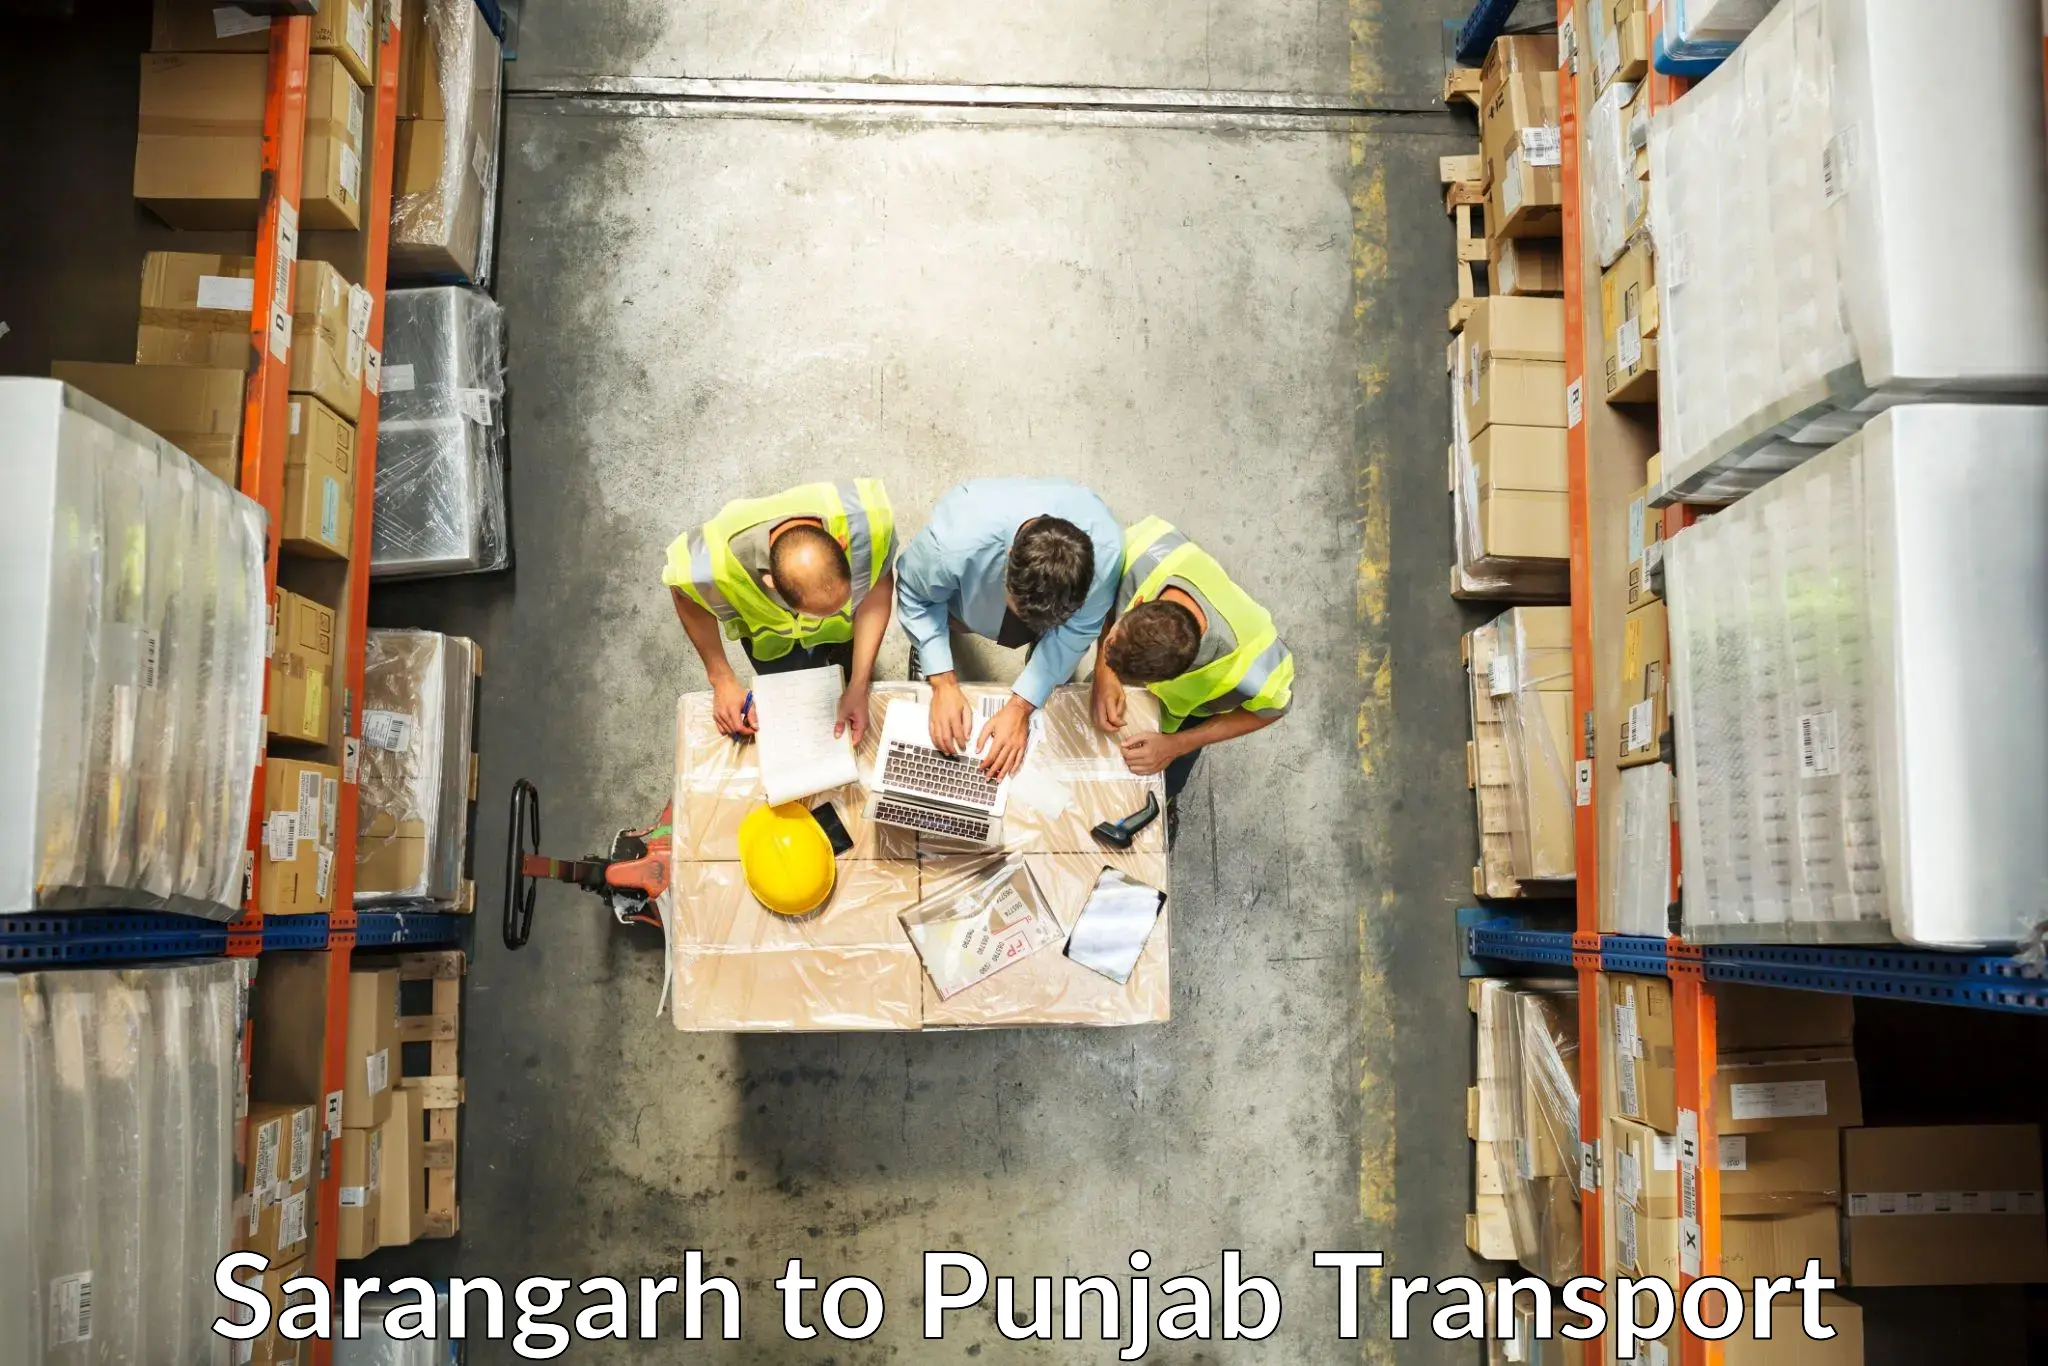 Truck transport companies in India Sarangarh to Muktsar